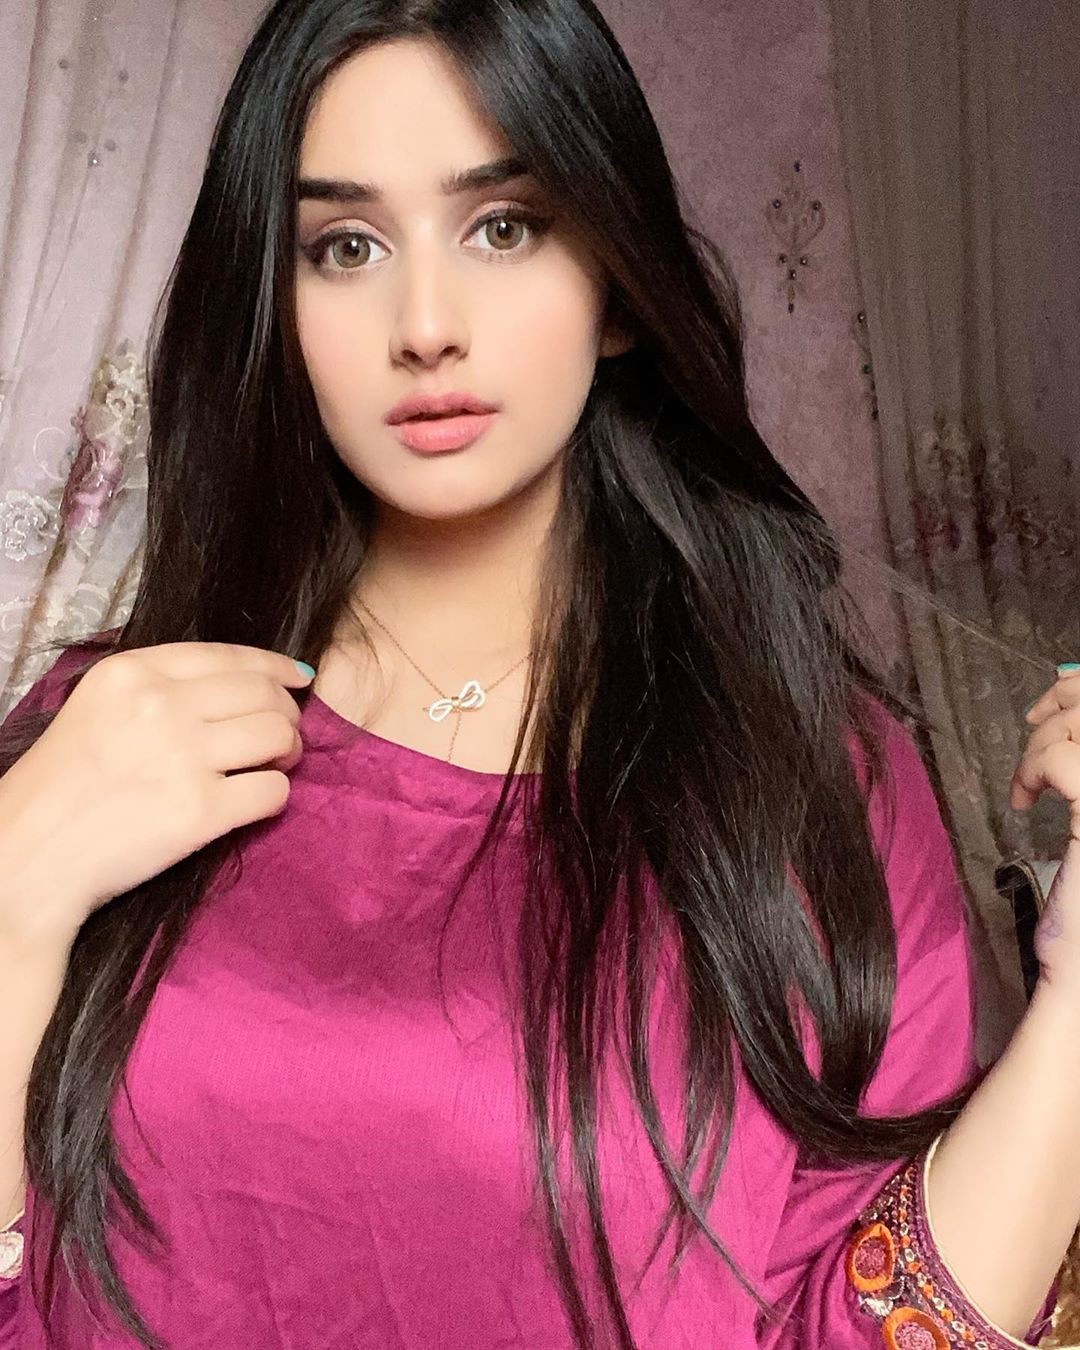 Alishbah Anjum Natural Black Hair, Cute Face, Beautiful Lips | Cute Indian  Girl - Alishbah Anjum | Alishbah Anjum Instagram, Black hair, Cute Girls  Instagram